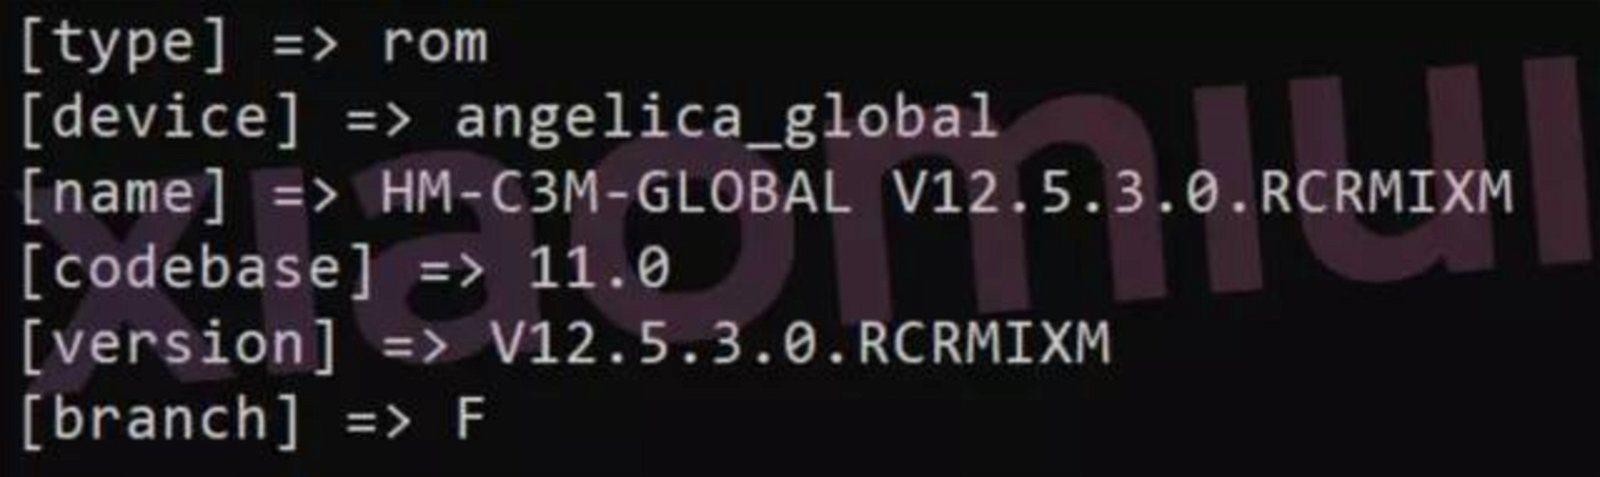 El pequeñín de Redmi está a punto de actualizar a MIUI 12.5